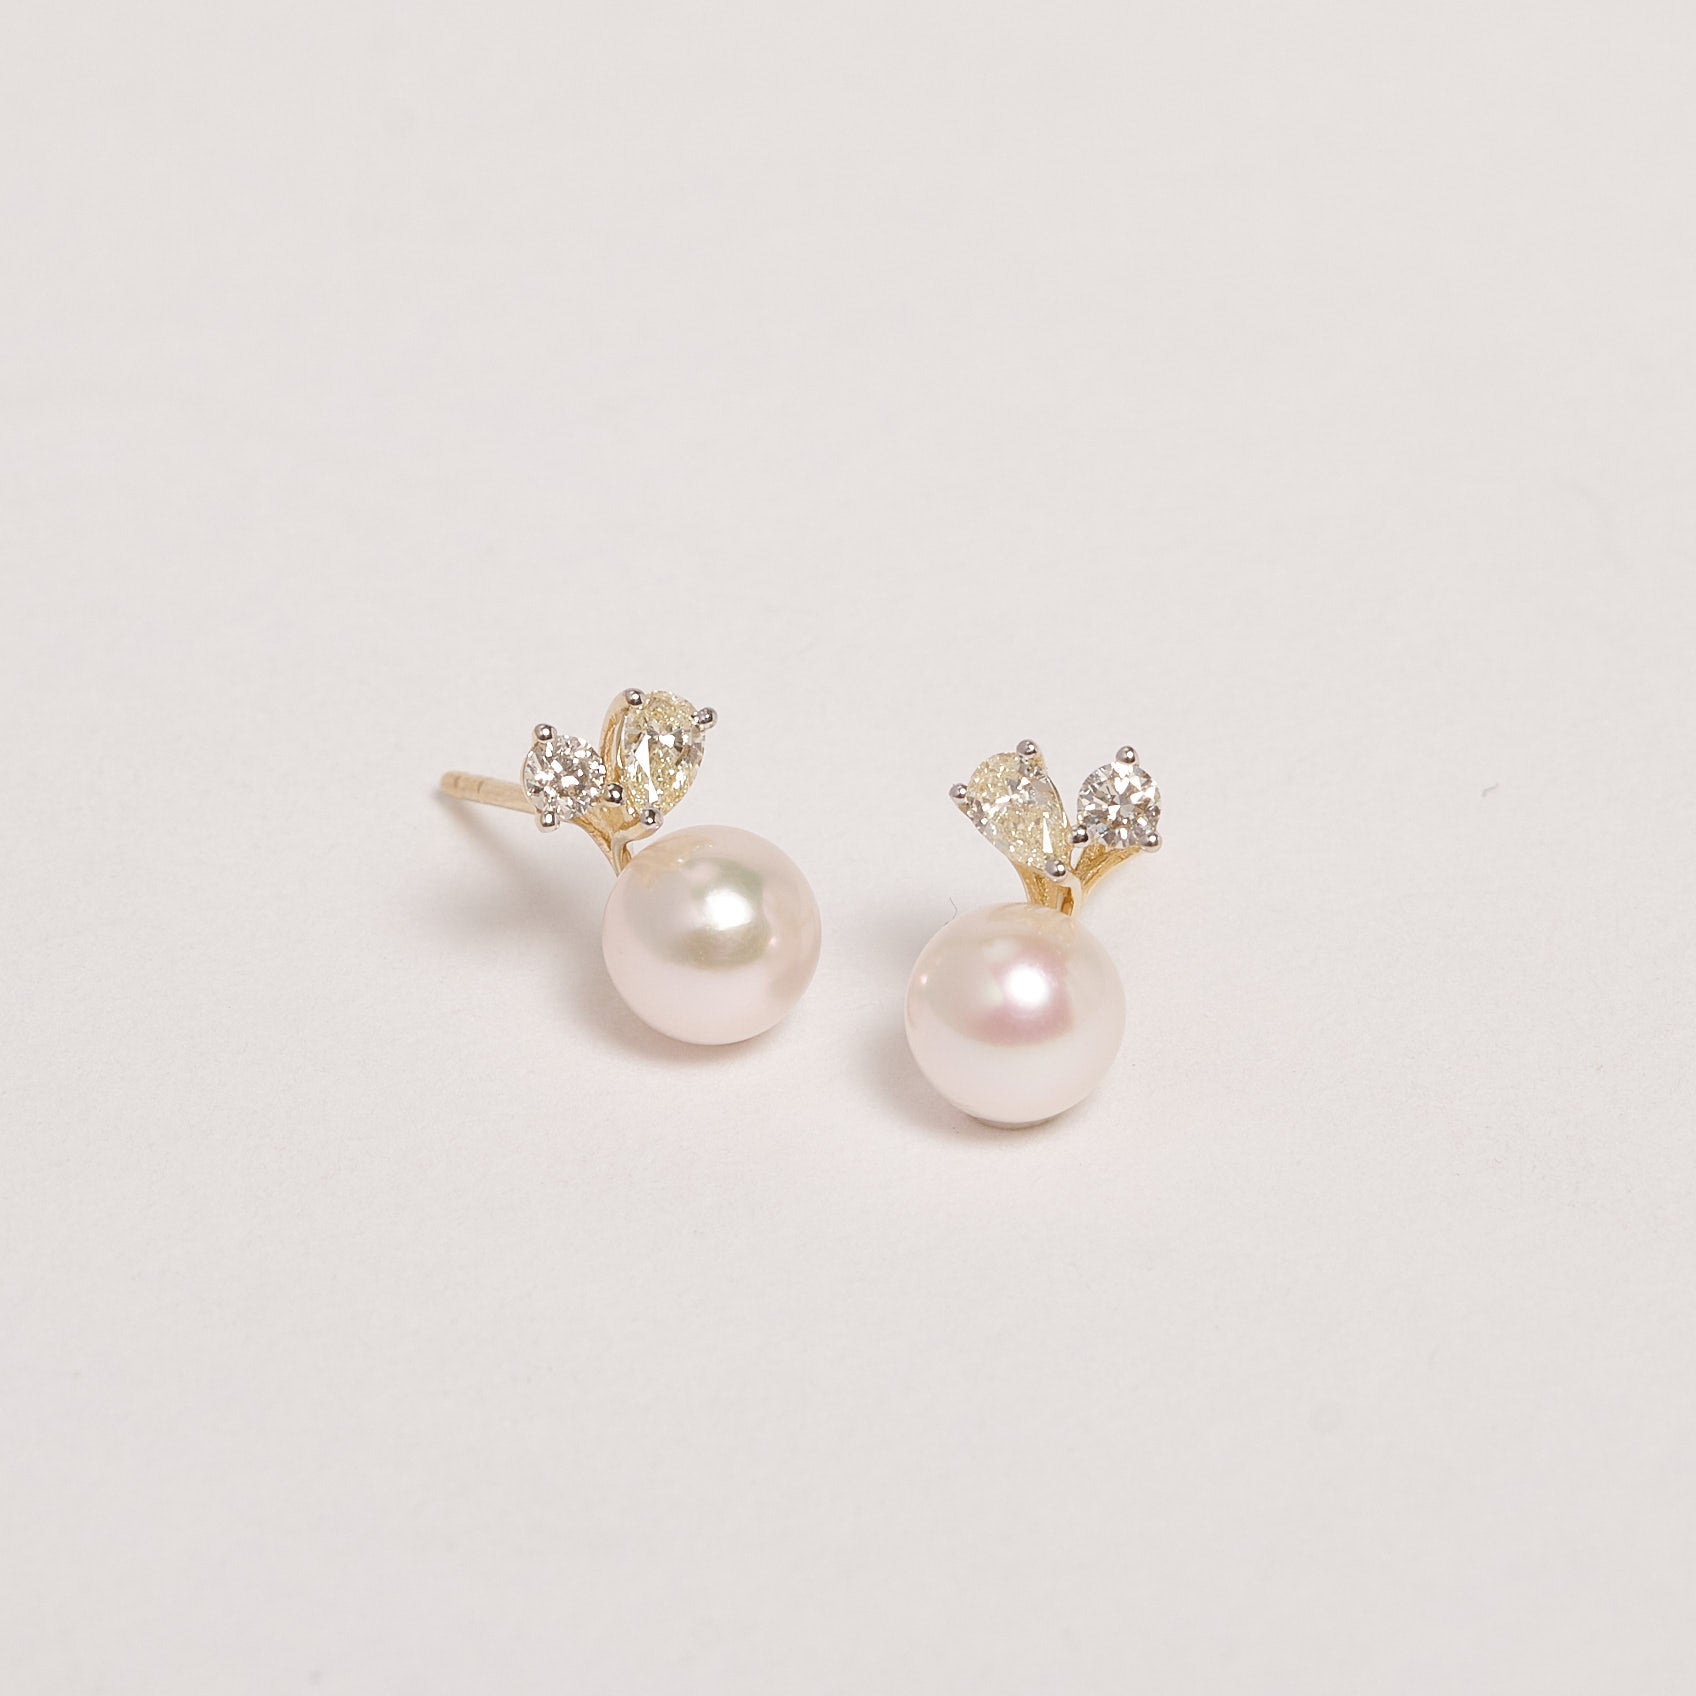 Astoria 9ct Yellow Gold Akoya Pearl & Diamond Earrings